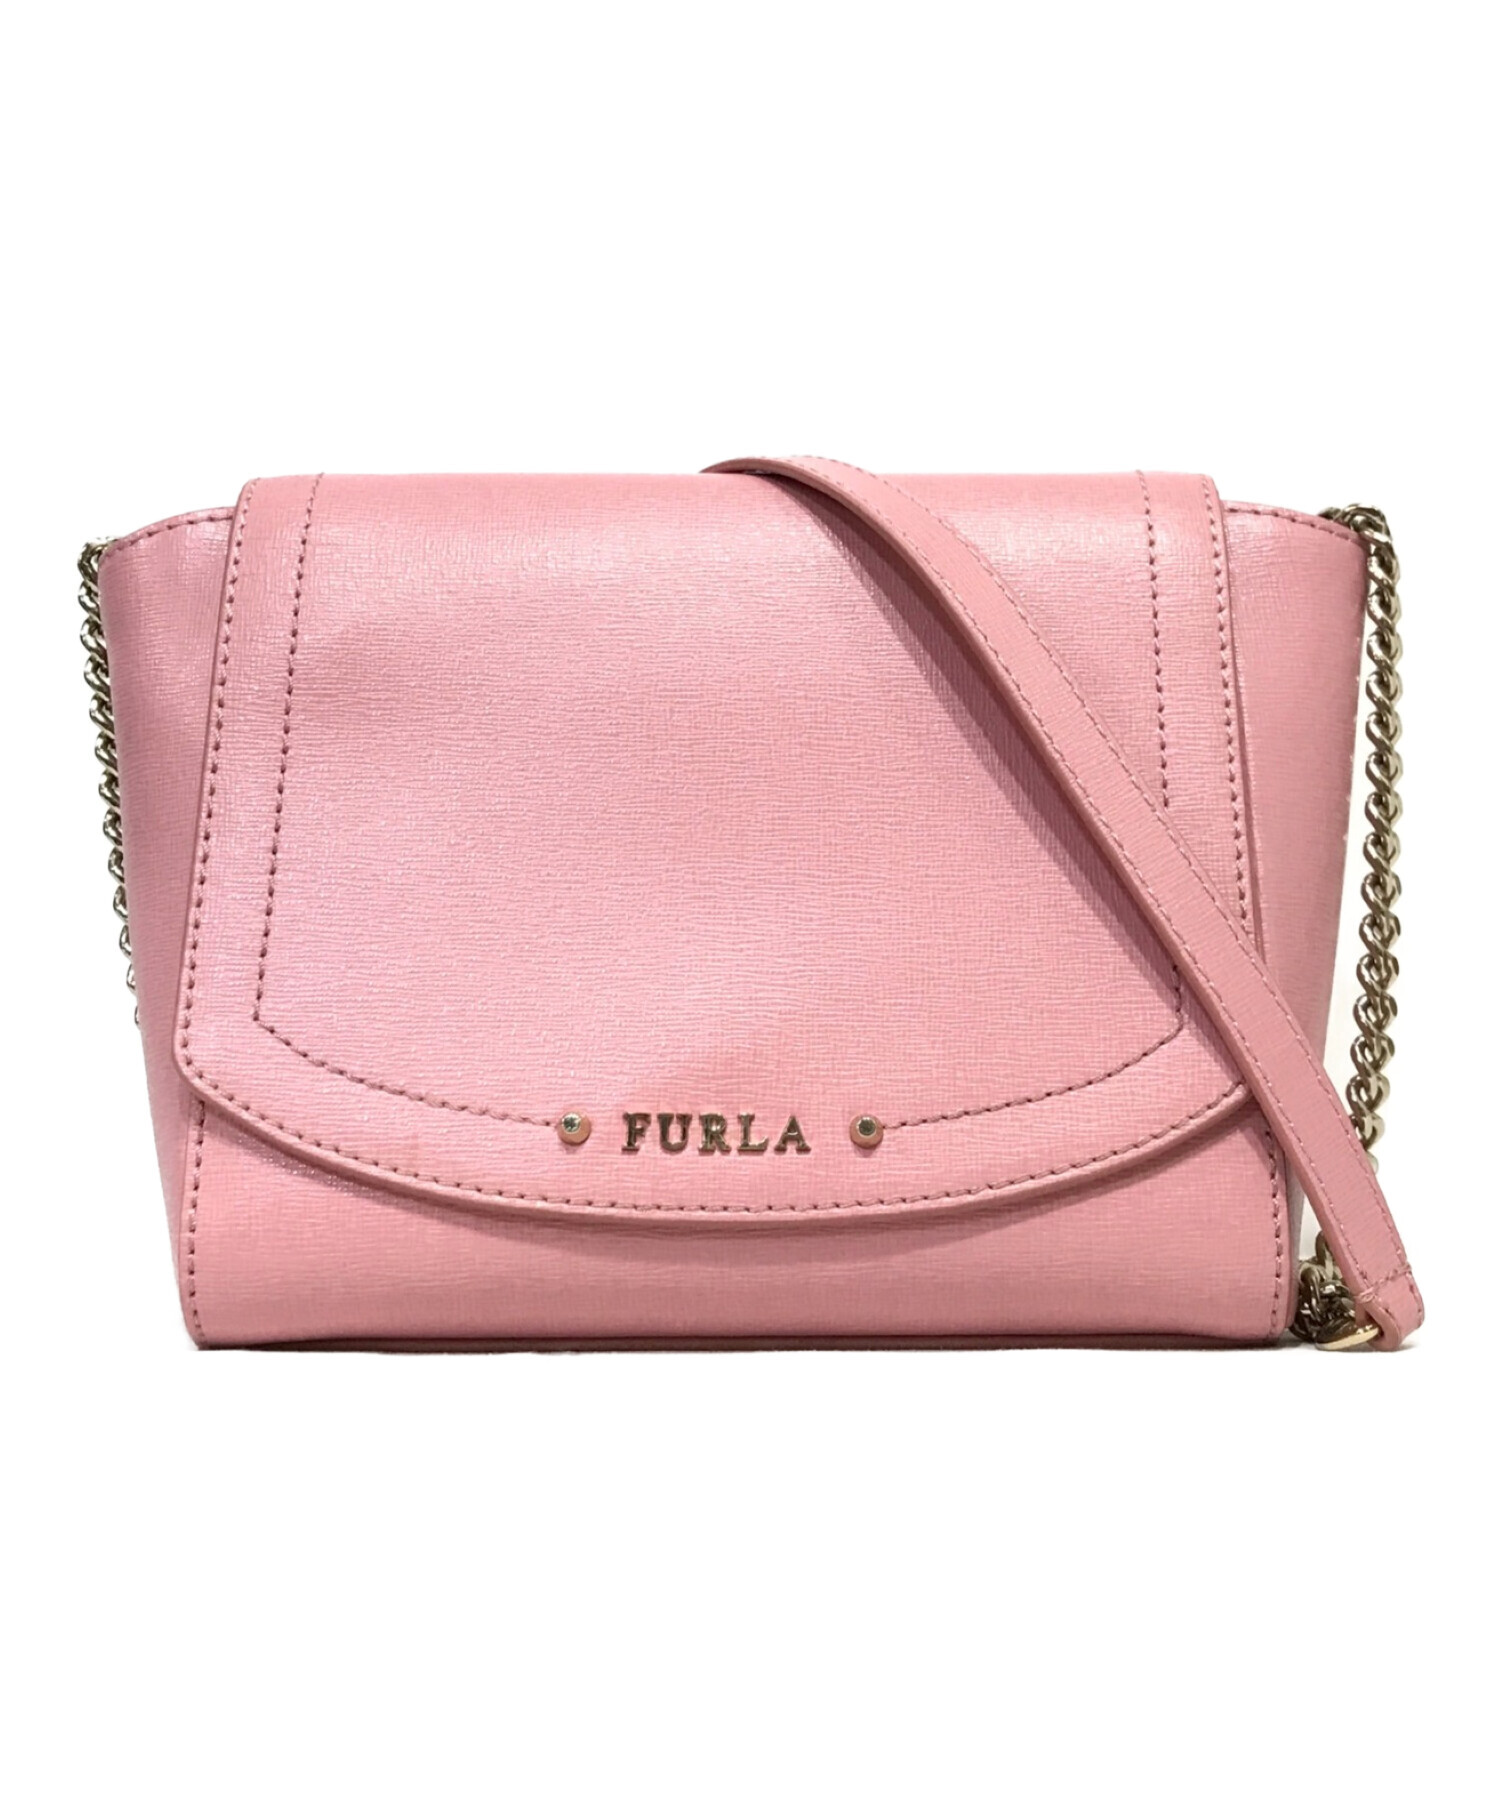 FURLA【FURLA】フルラ チェーンショルダーバッグ ハンドバッグ ピンク